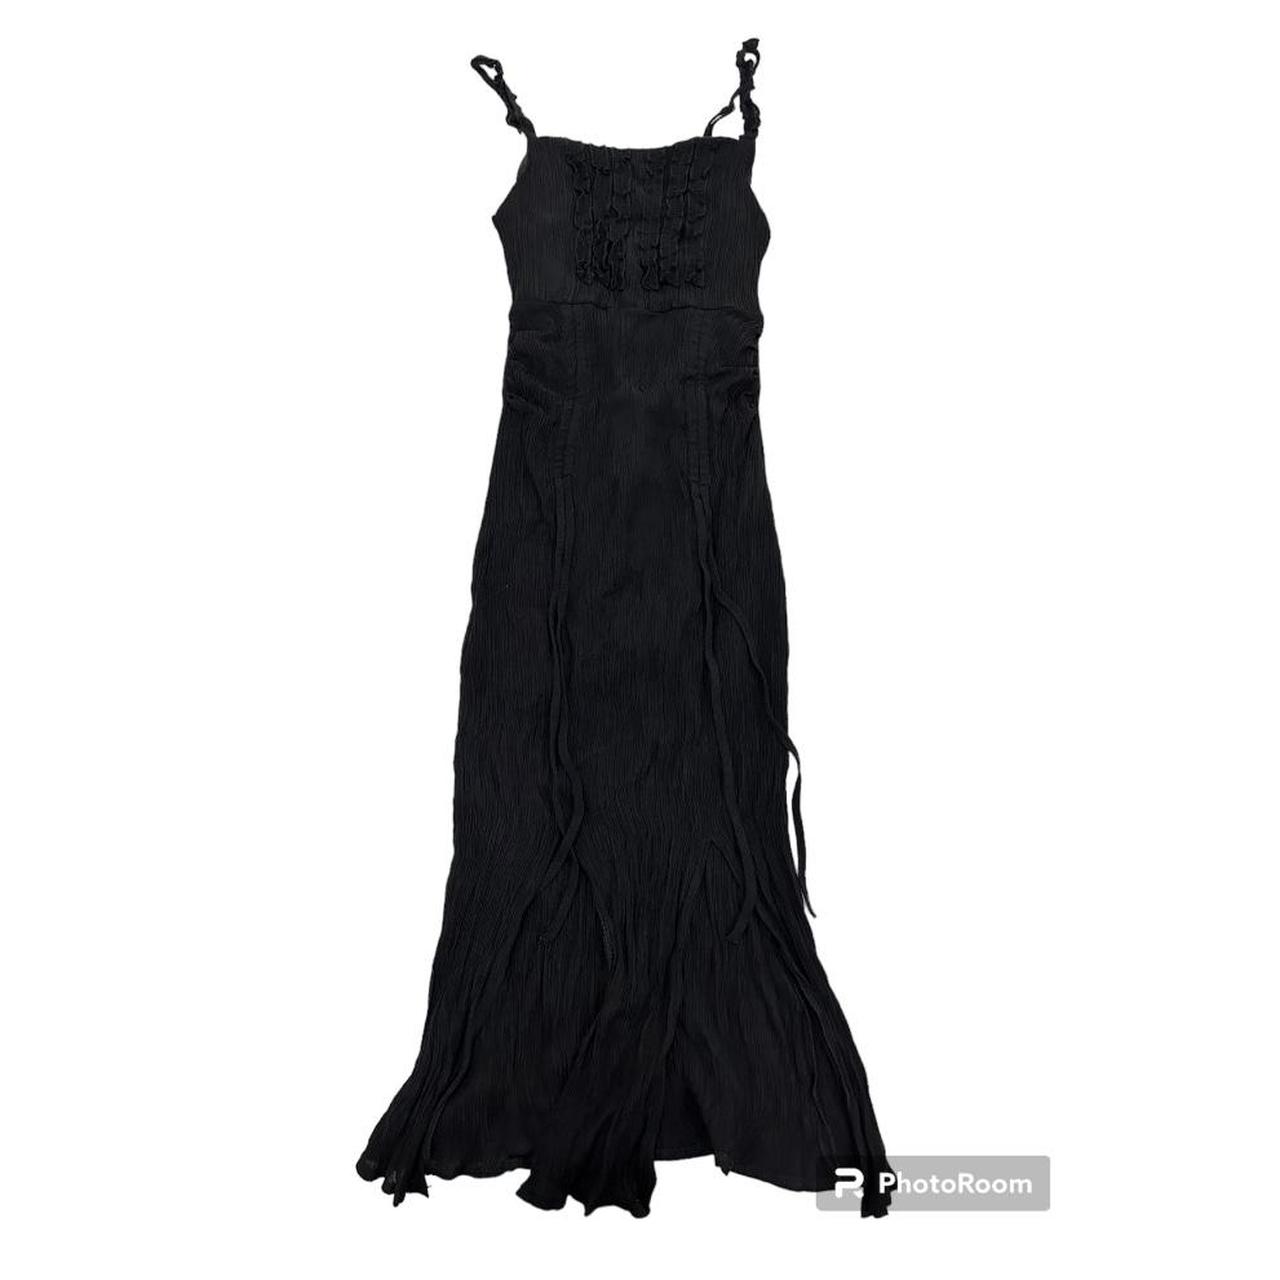 long black dress from mao ye sky size small... - Depop